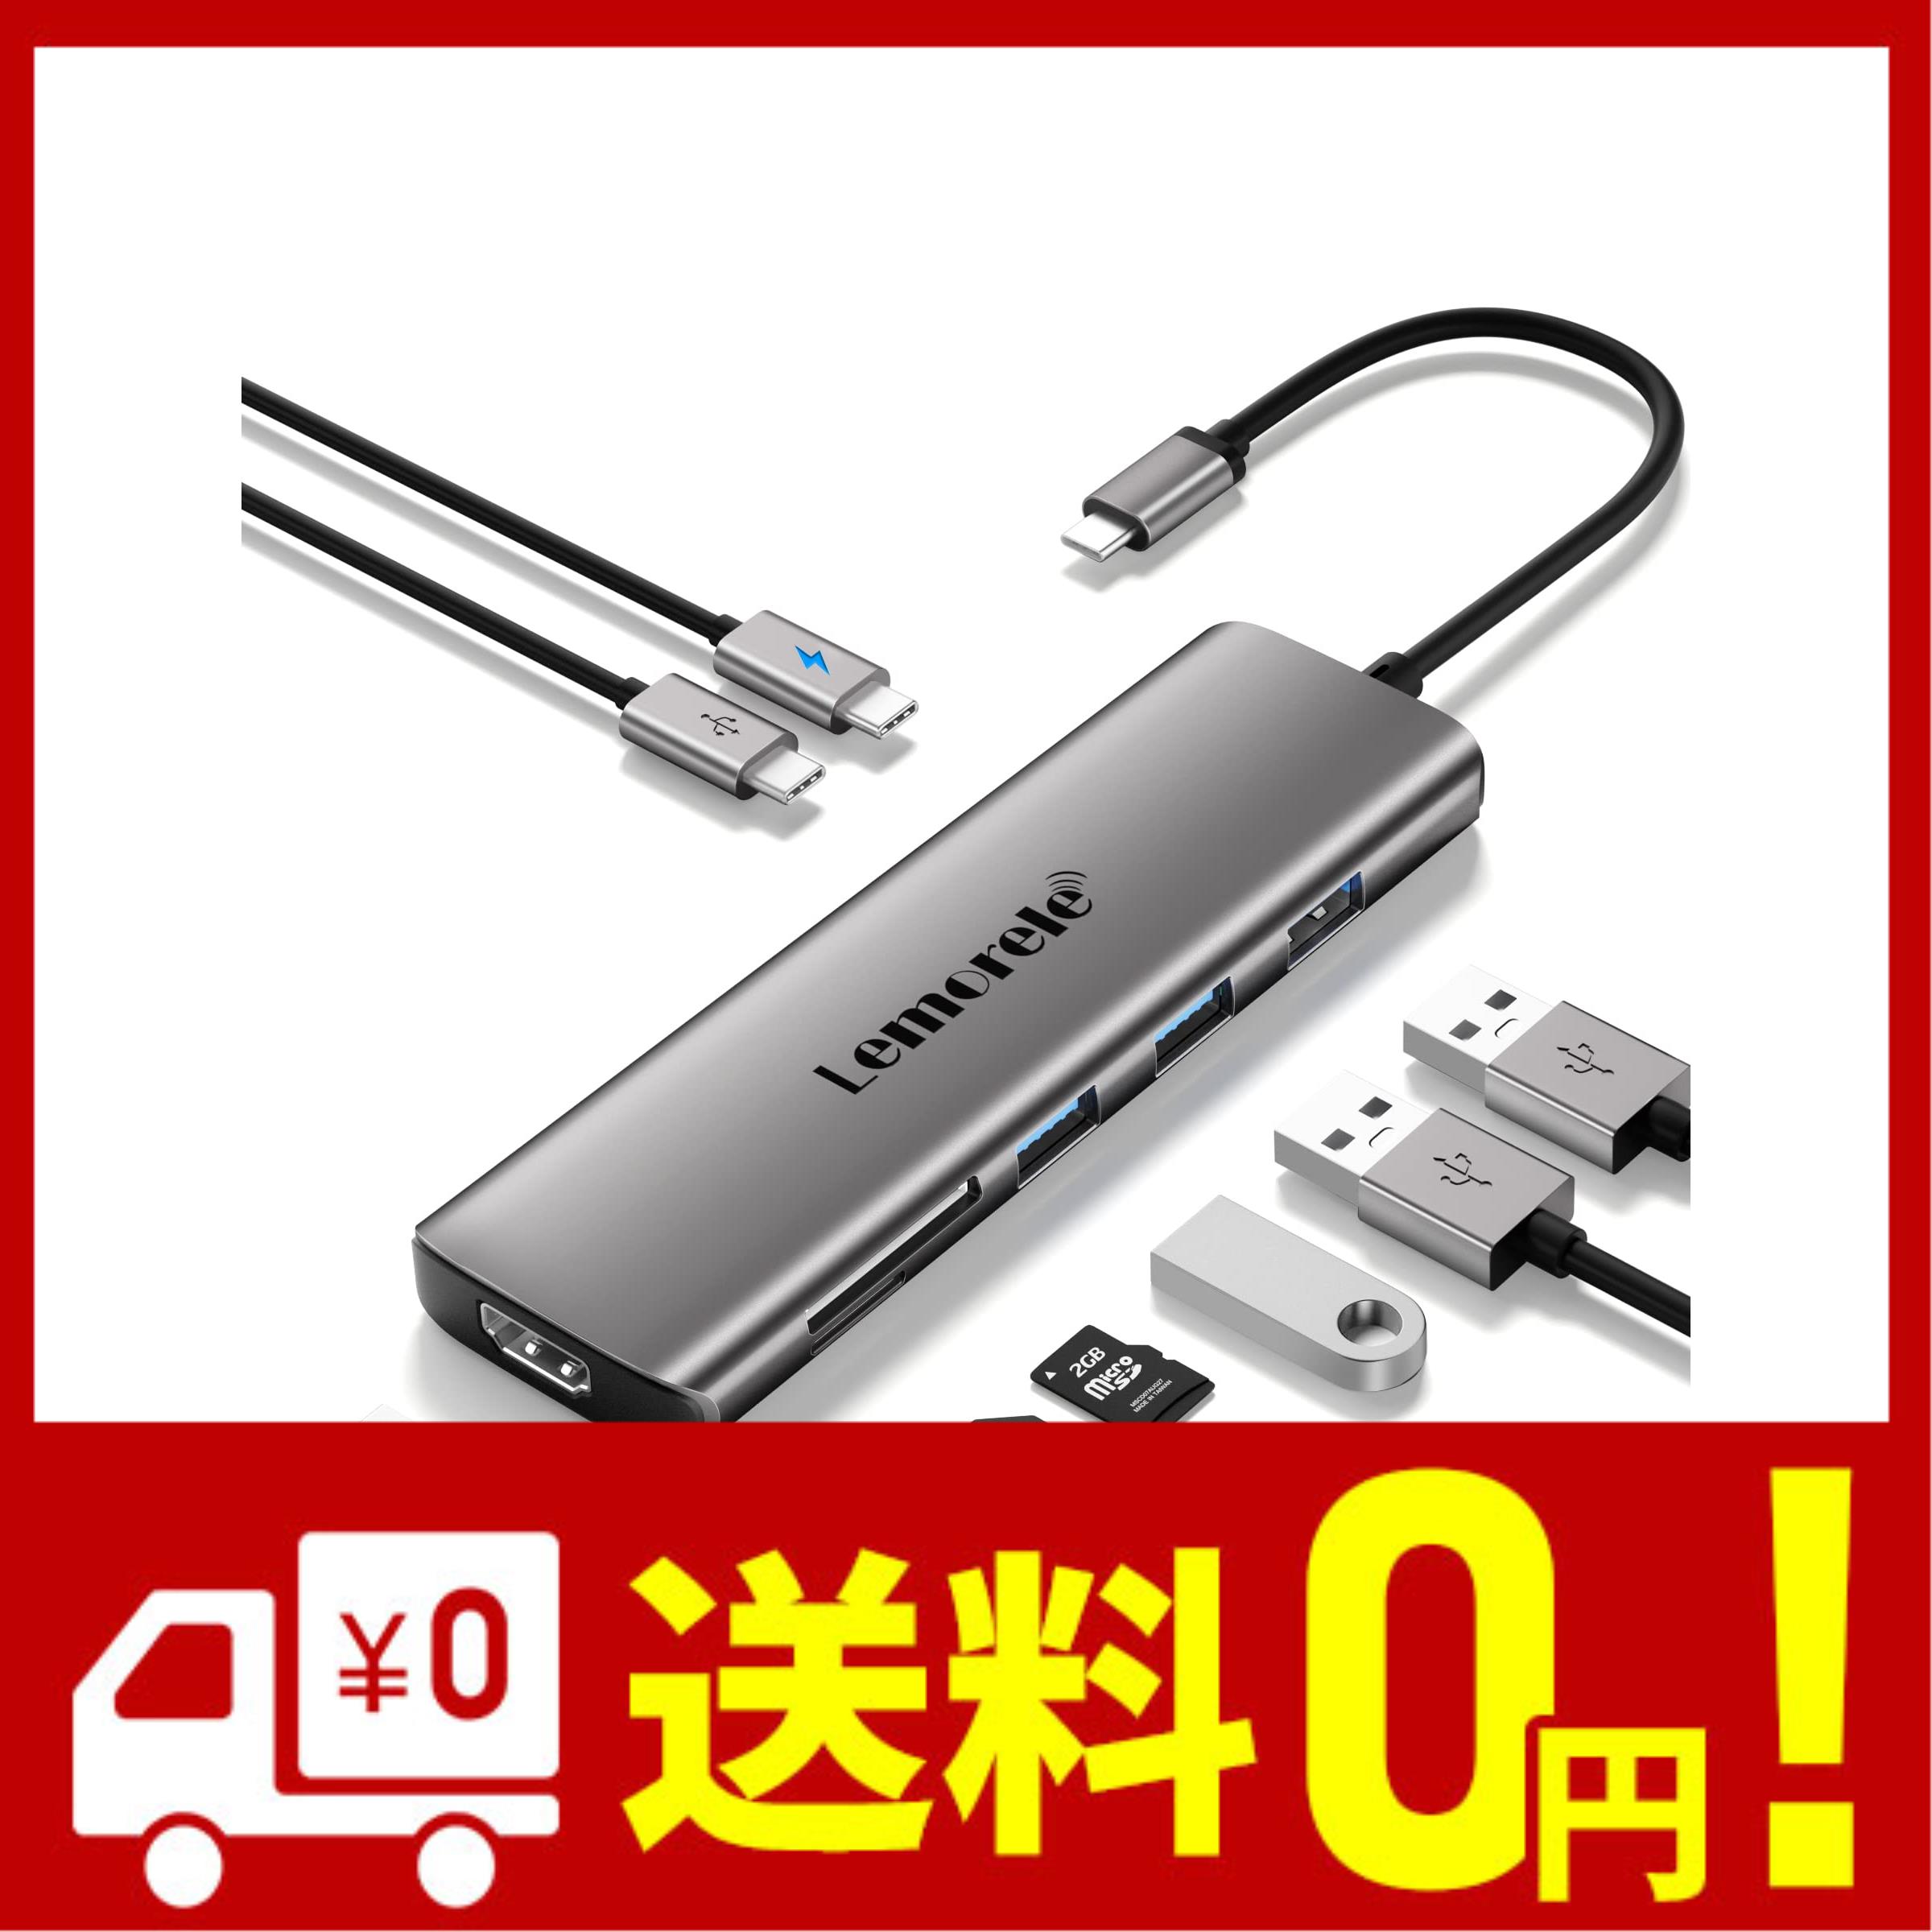 usb c hub 8-in-1 Lemorele USB C ハブ ドッキングステーション USBC マルチポート アダプター 4K HDMI 1 USB 3.0 2 USB 2.0 USB C Daten